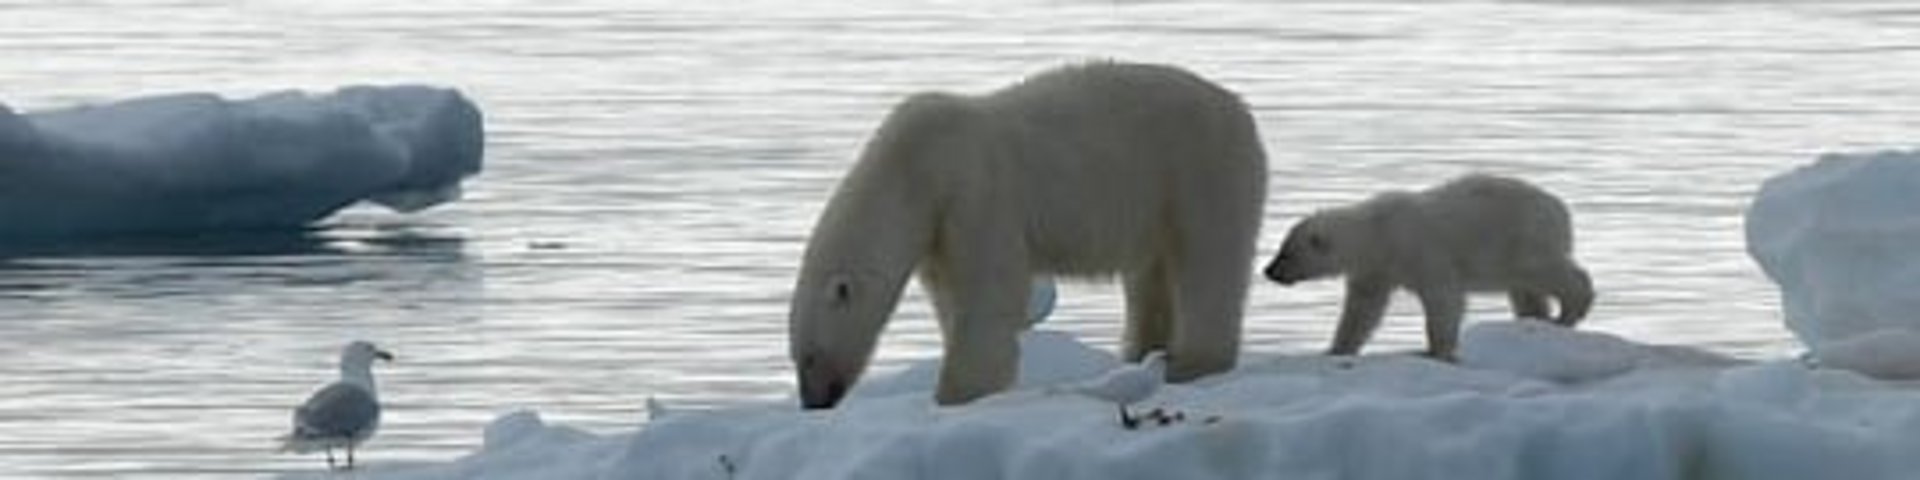 Eisbären auf Eisscholle